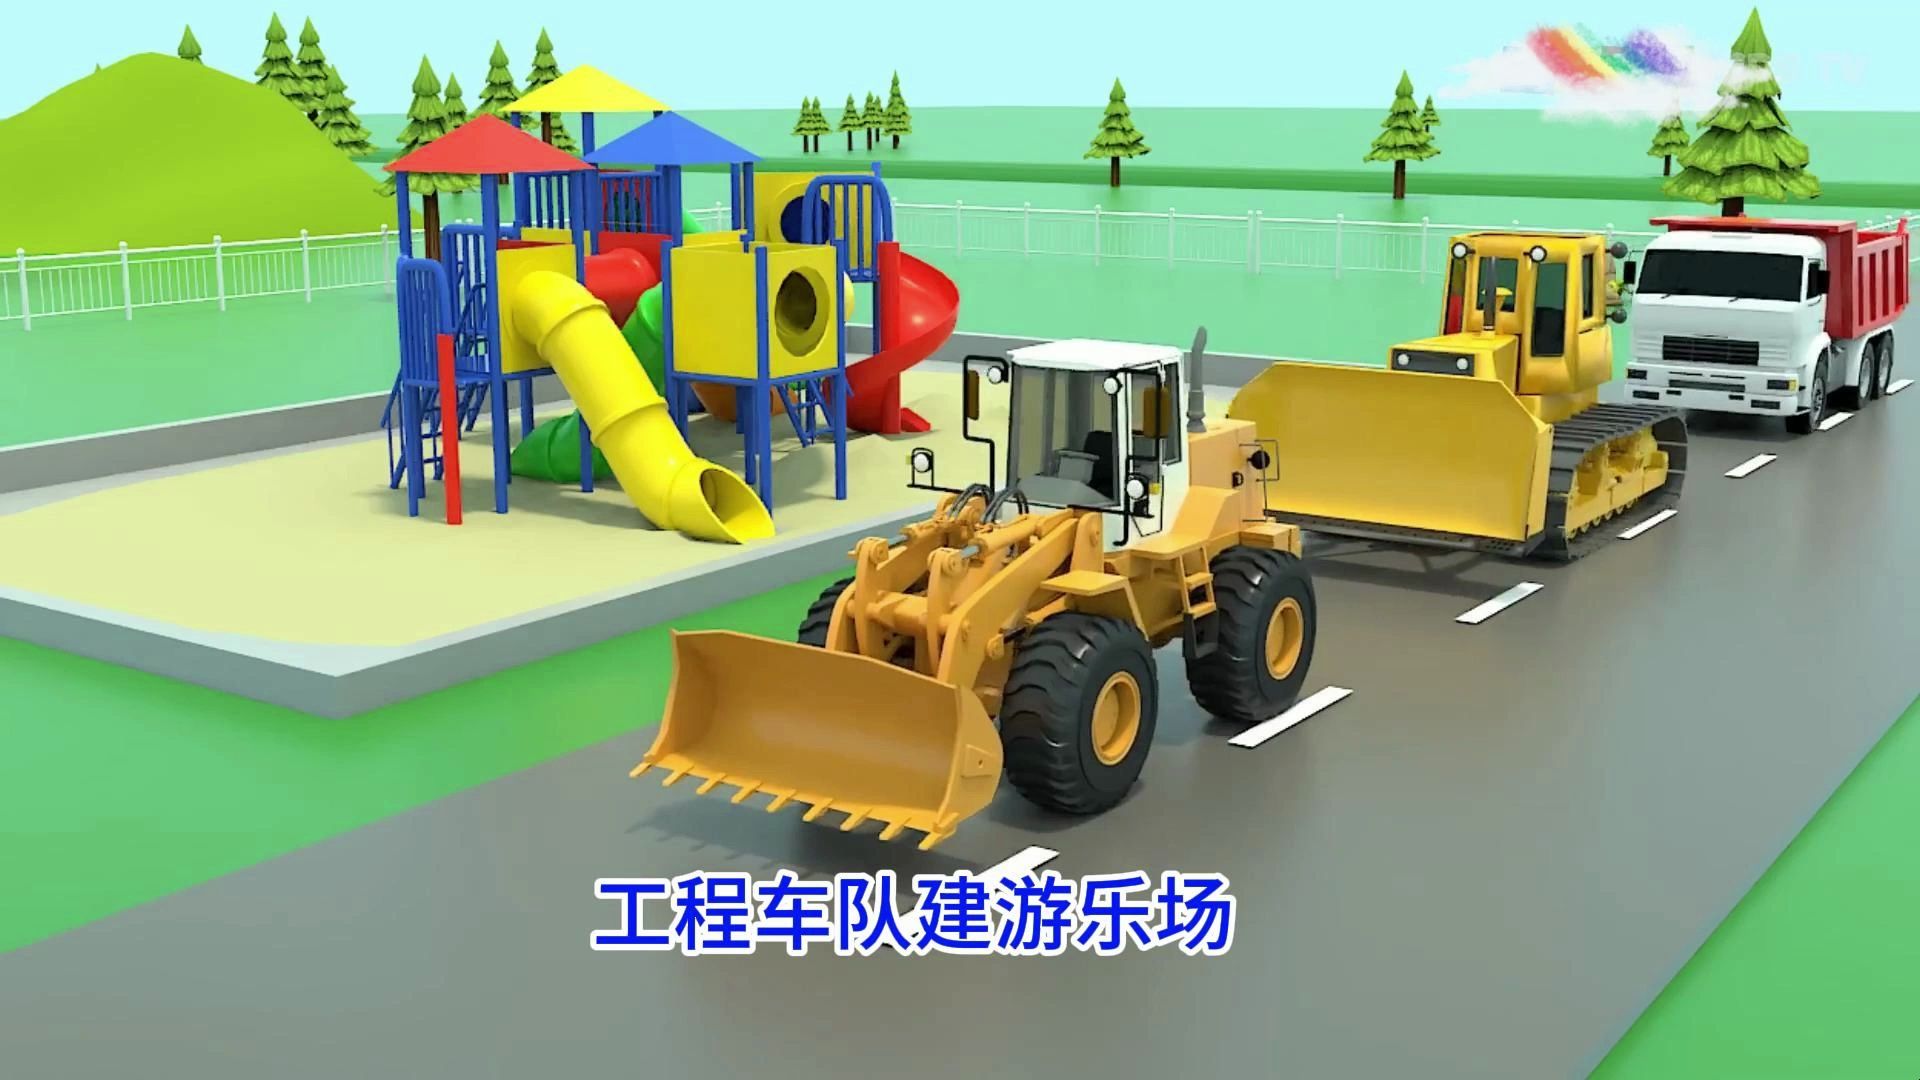 推土机水泥搅拌车自卸卡车工程车队修建游乐场系列儿童益智动画片